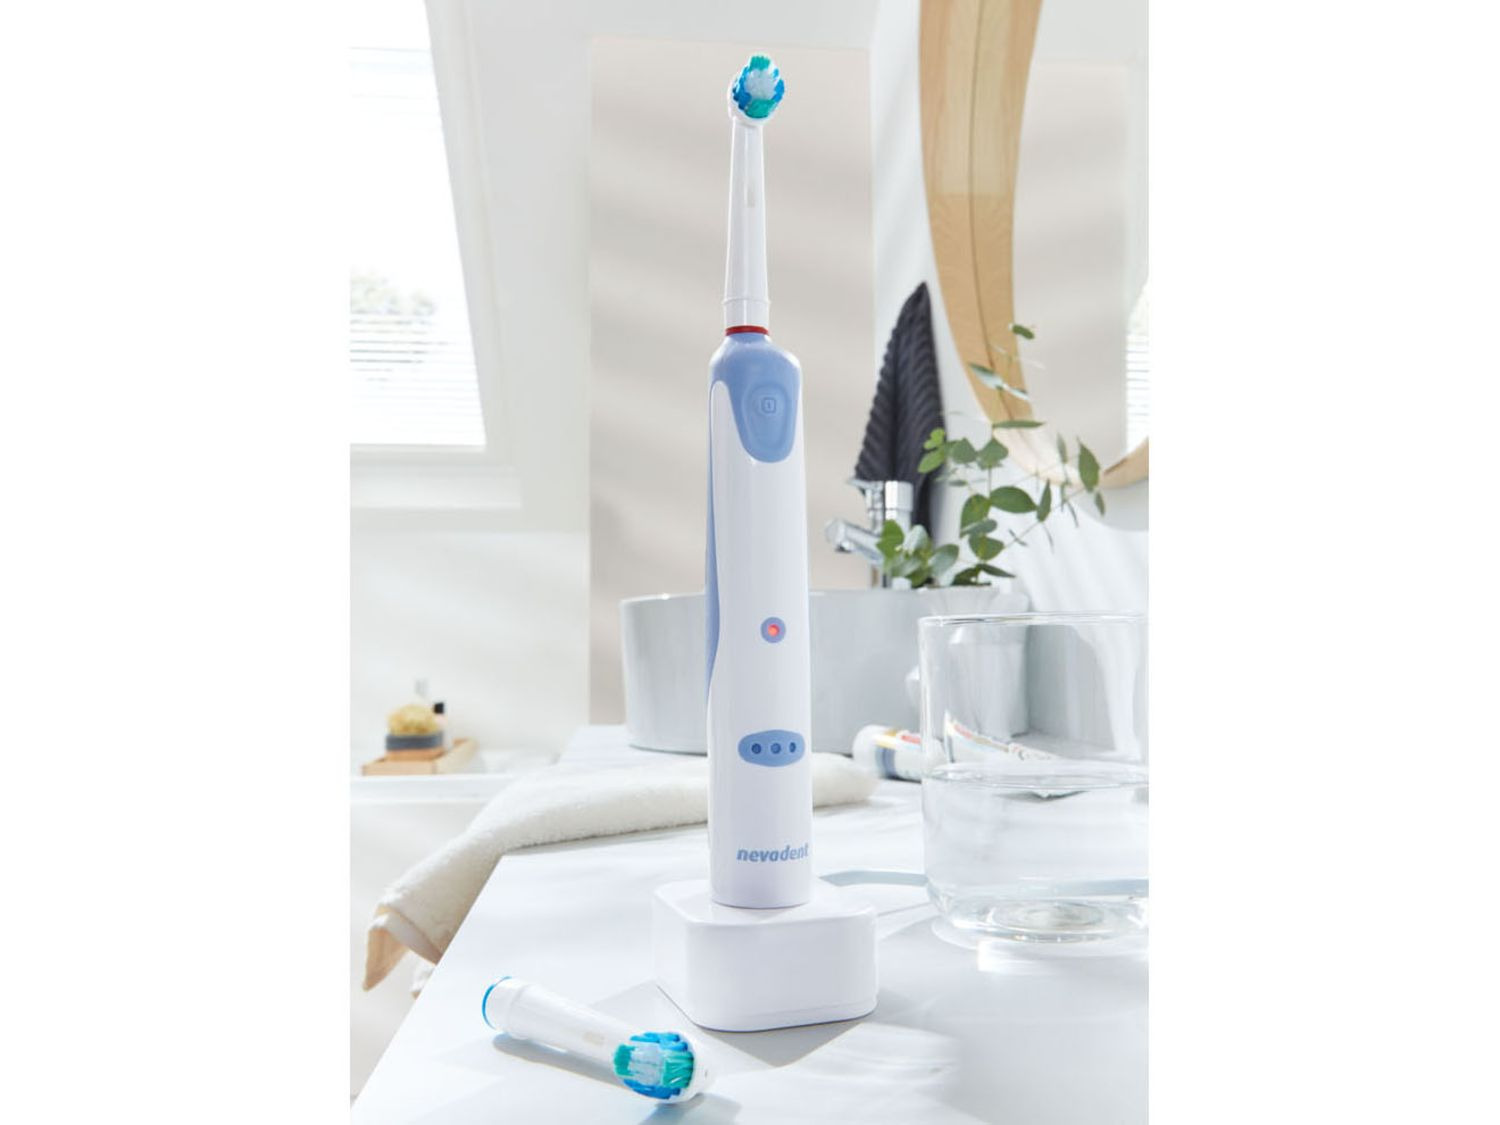 zegen Orthodox Bedienen Elektrische tandenborstel kopen? | LIDL